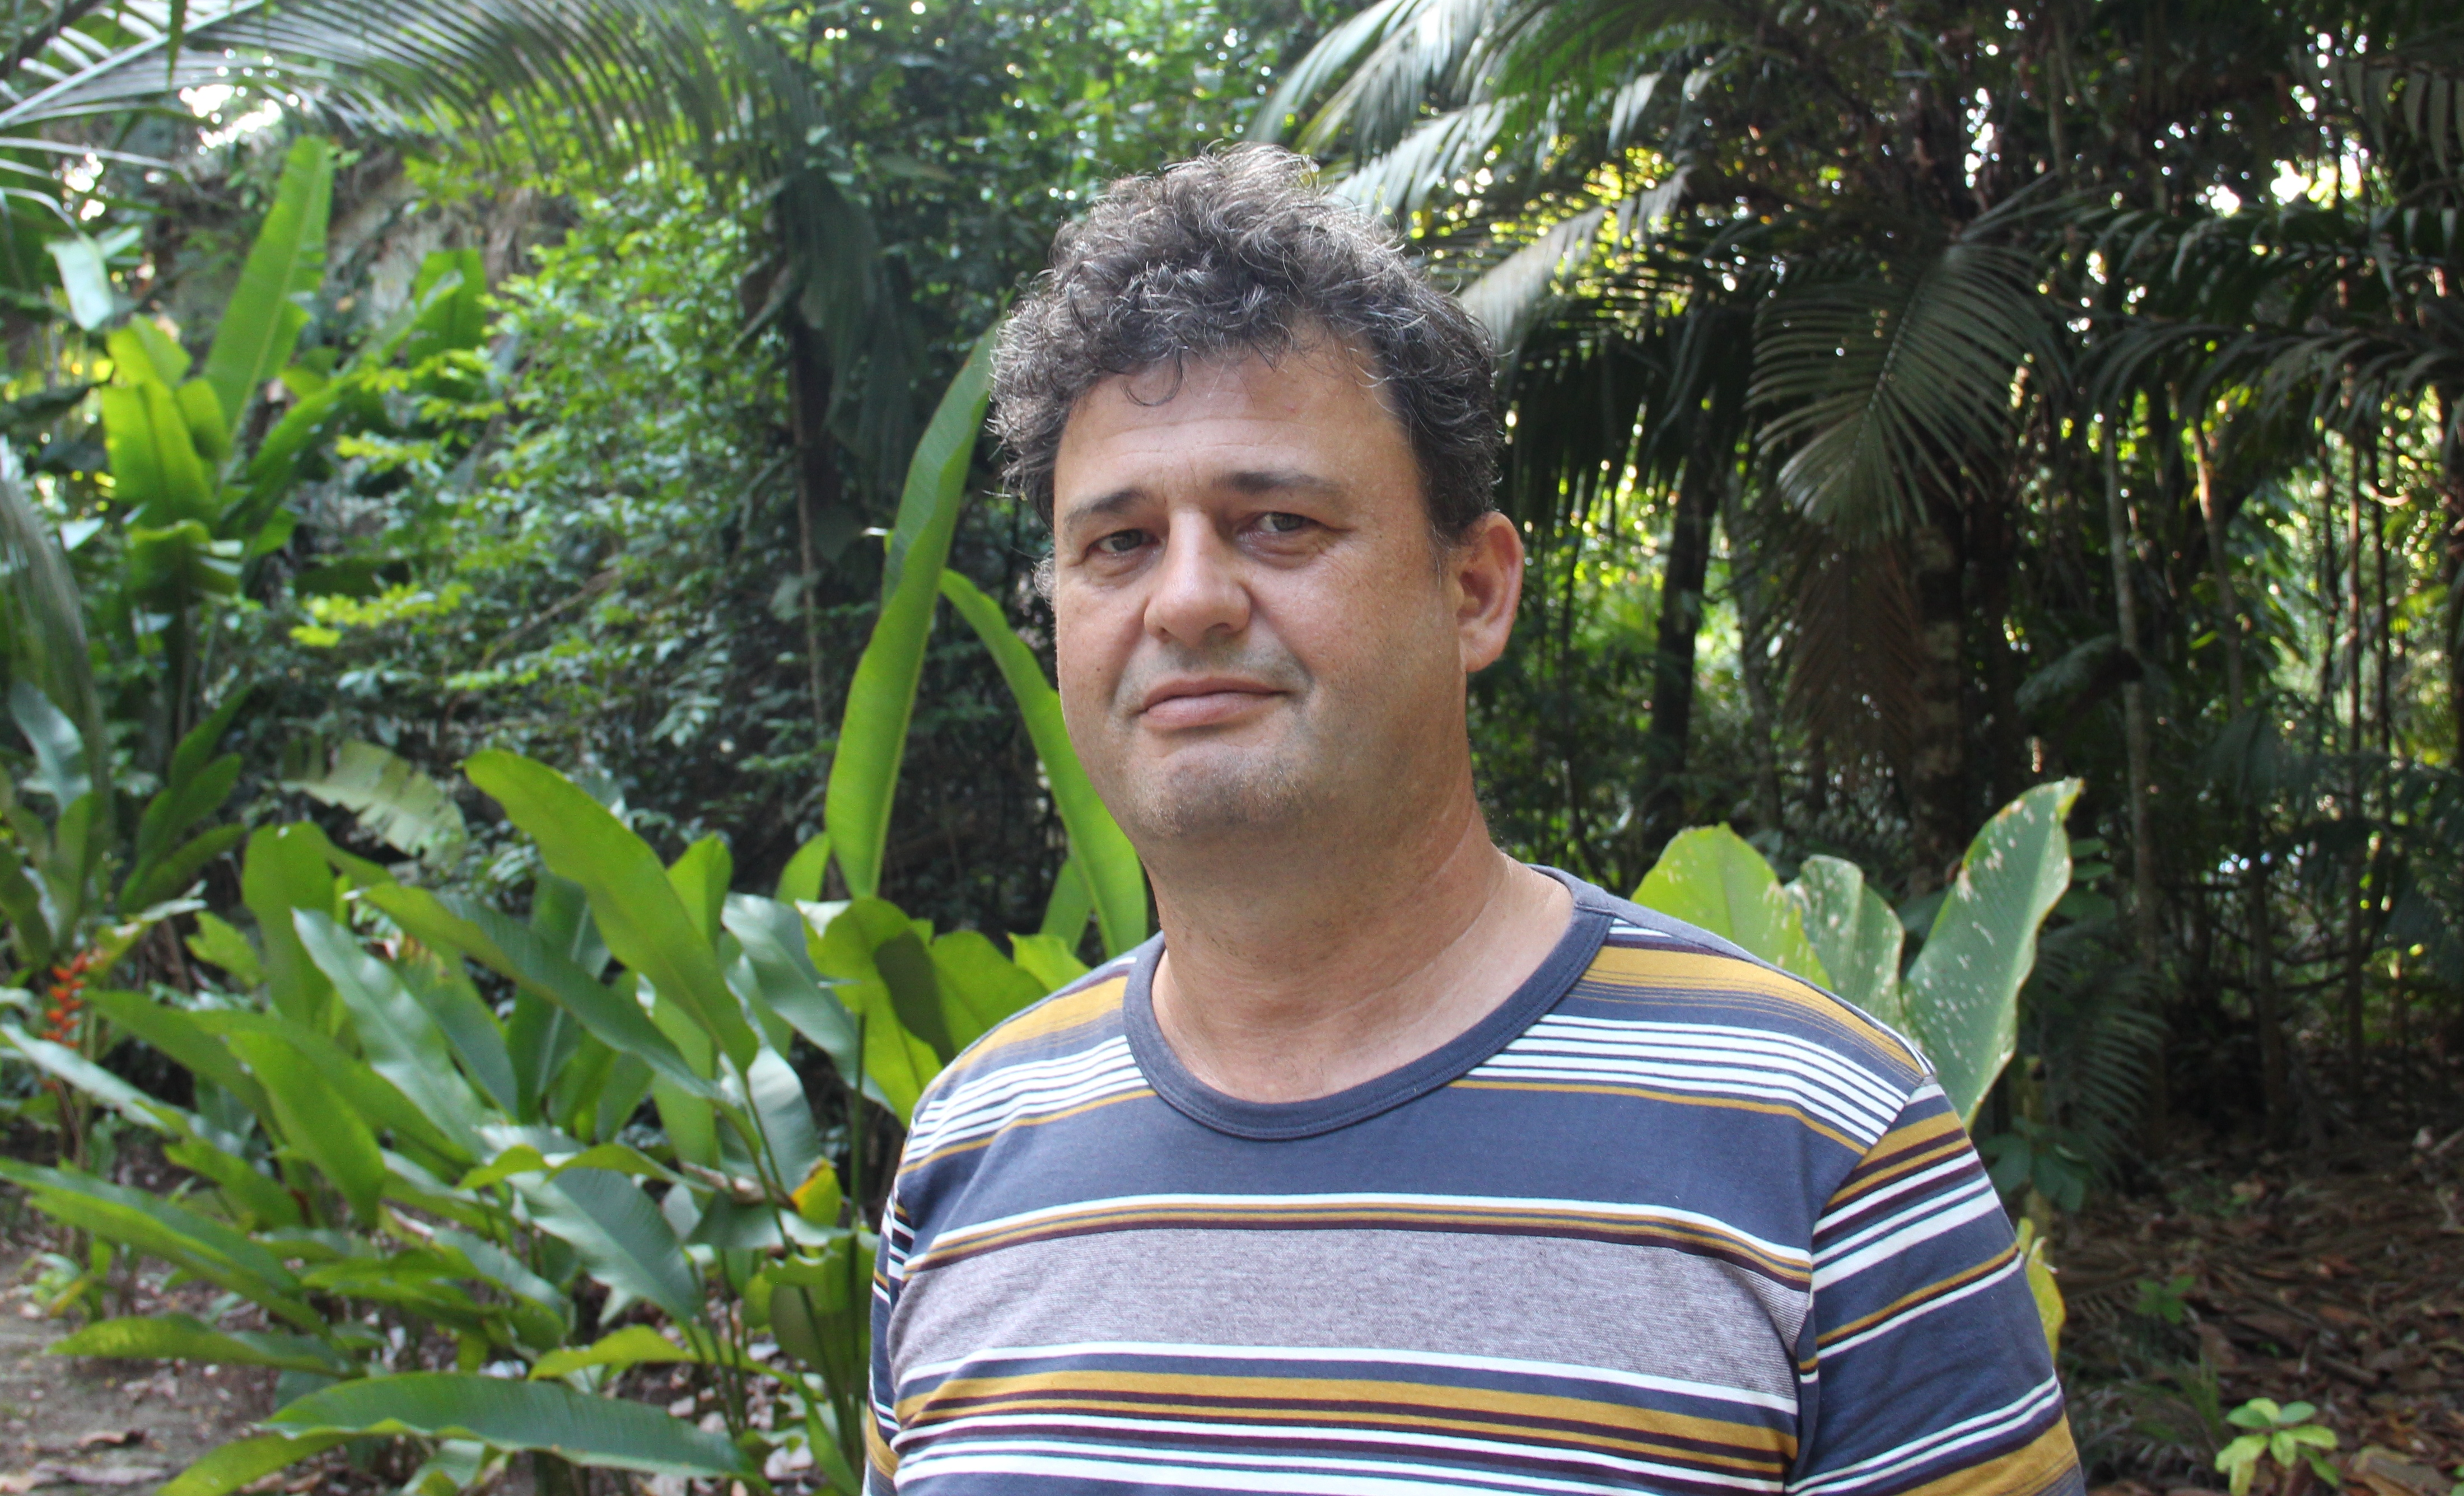 O vice-coordenador do grupo de pesquisa Mauá (Ecologia, Monitoramento e Uso Sustentável de Áreas Úmidas) do Instituto Nacional de Pesquisas da Amazônia (Inpa), Jochen Schongart - uma das maiores autoridades quando se fala de áreas úmidas brasileiras